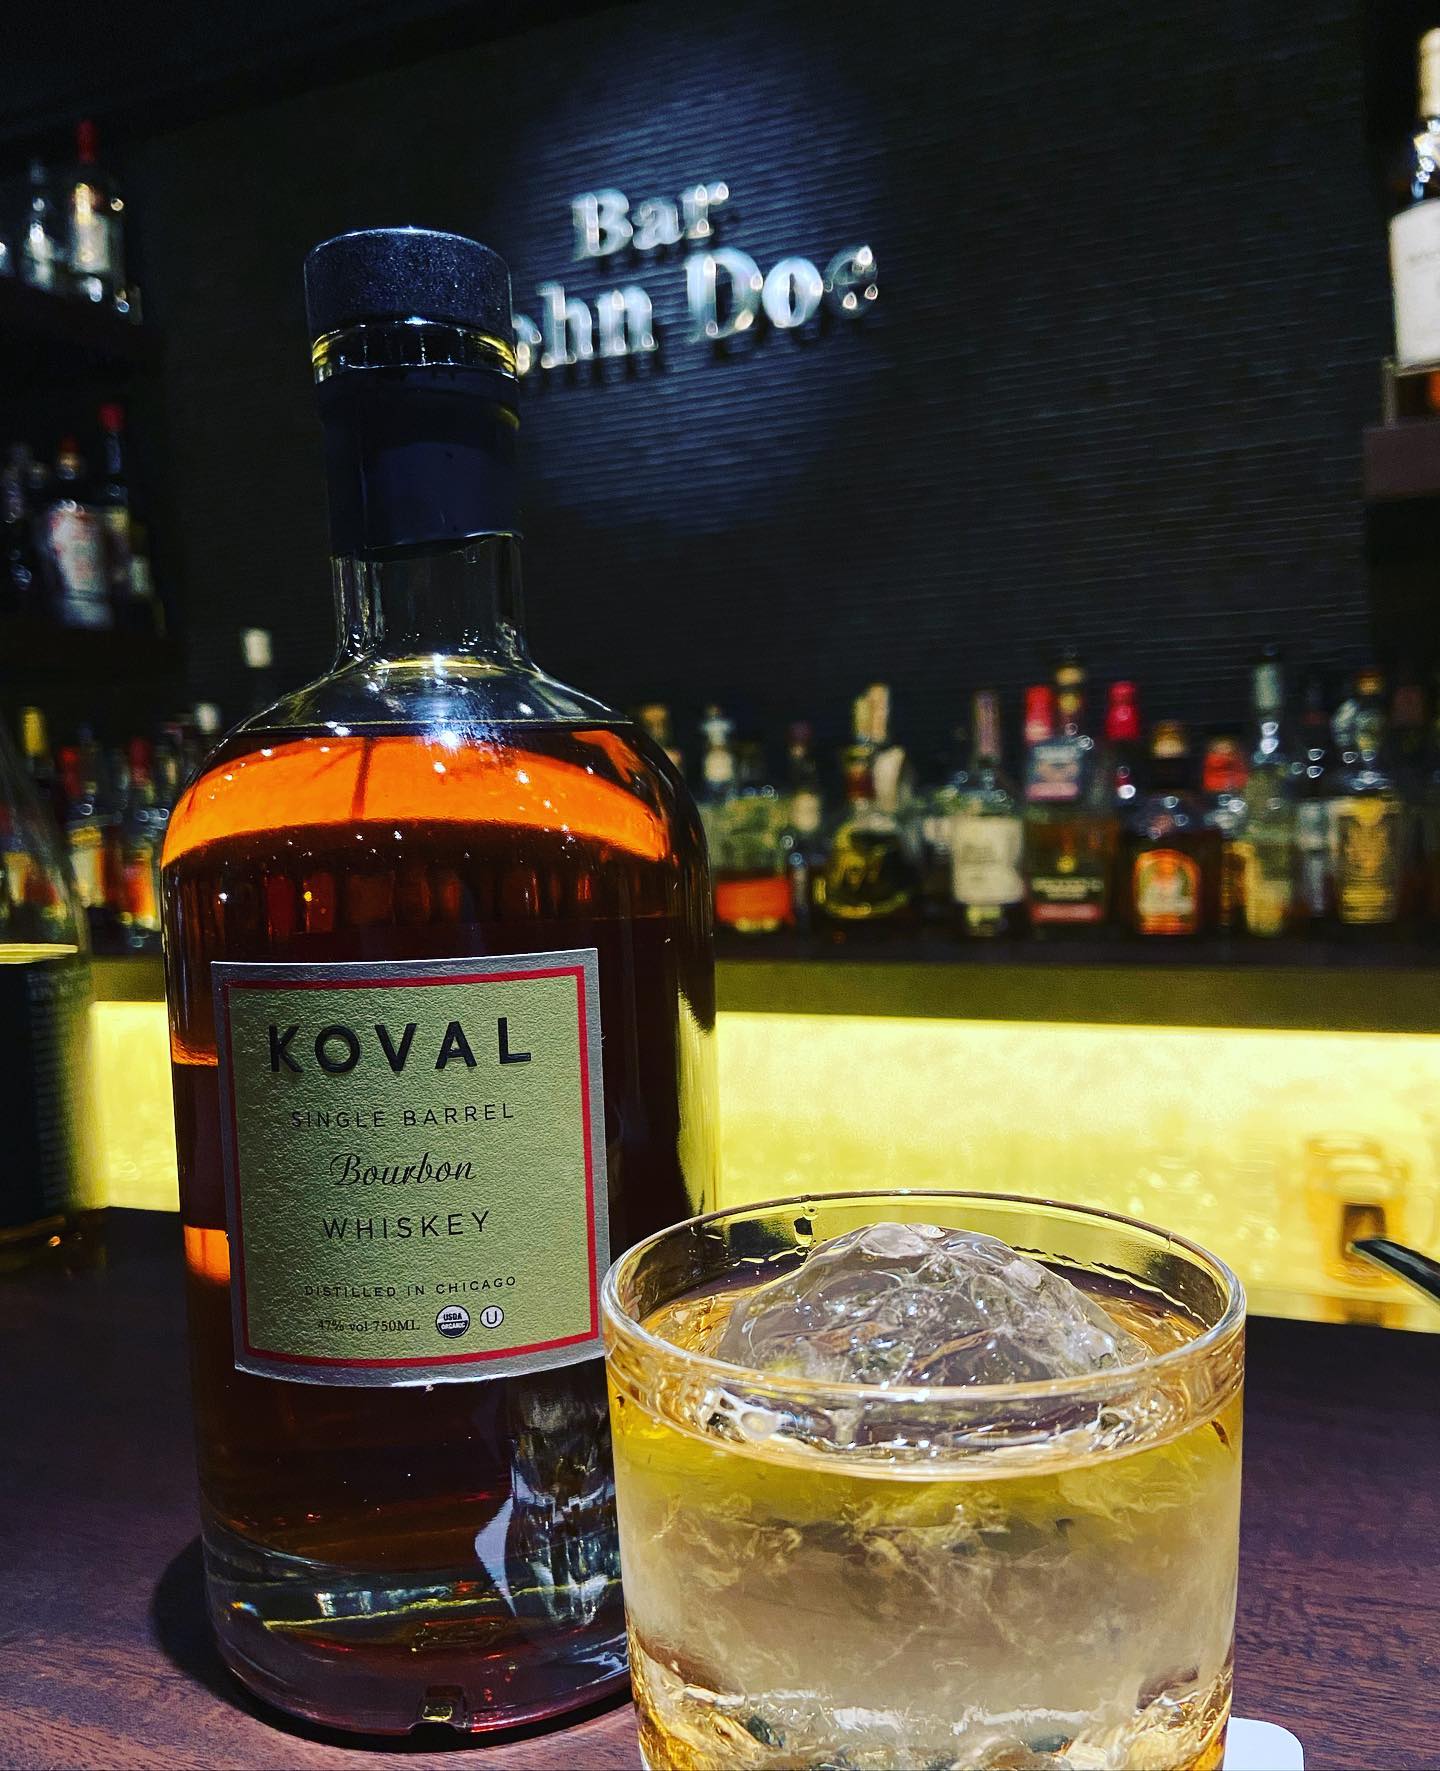 「KOVAL SINGLE BARREL Bourbon  コーバル　バーボン」アメリカシカゴのKOVAL蒸溜所。100%オーガニックのコーンとミレーをブレンドしたコーバル独自のバーボンです。味は、穏やかな甘さと柔らかいバニラ、微かなキャラメルで口当たりが良い仕上がりです。バーボン好きは是非！#bar #johndoe #shimokitazawa #whiskey #cocktails #beer #wine #foods #pasta #下北沢 #南西口 #バー #1人呑み #隠れ家 #カクテル #ワイン #パスタ #グラタン #全席喫煙ok #山口県 #二次会 #デート #深夜営業 #貸切#koval #バーボン#シカゴ#クラフトディスティラリー本日の下北沢BarJohnDoe